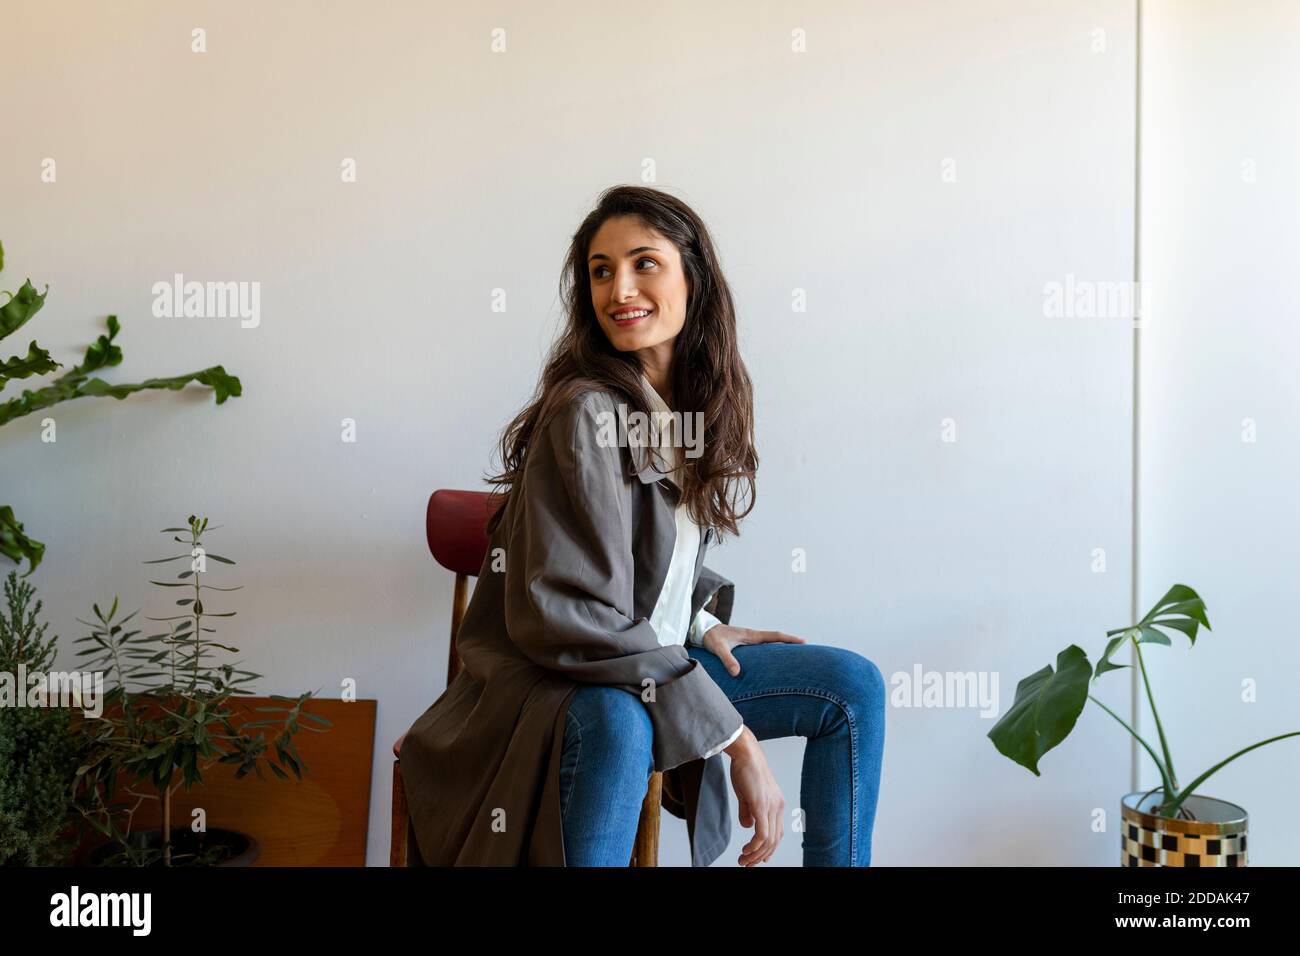 Lächelndes weibliches Modell, das wegschaut, während es auf Stuhl sitzt Zu Hause Stockfoto